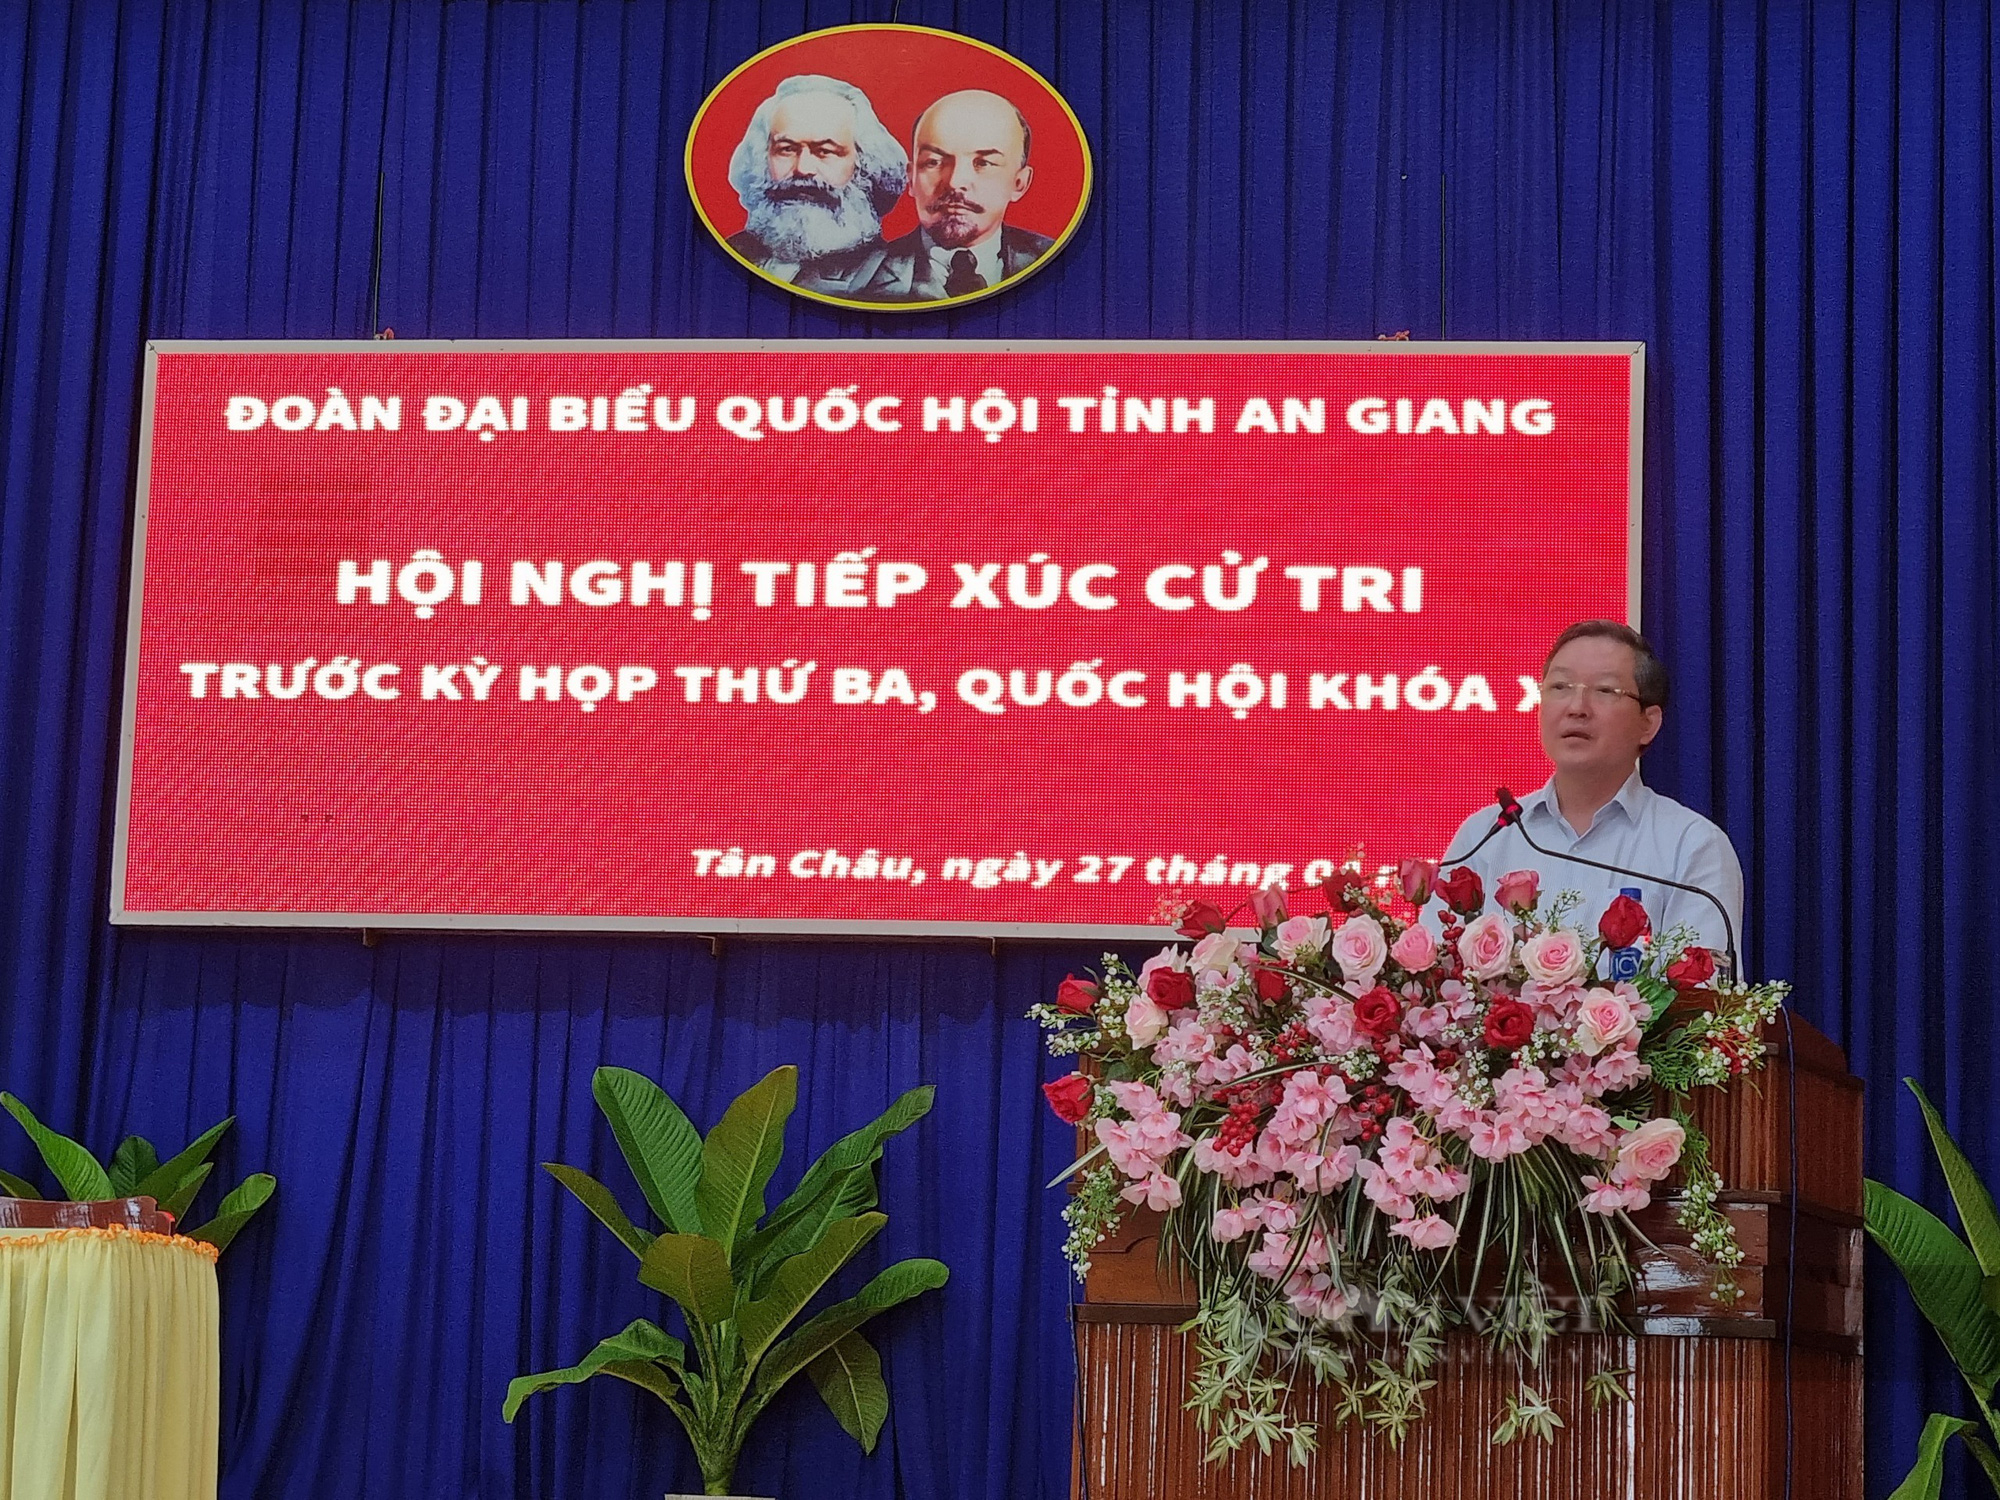 Đoàn đại biểu Quốc hội tỉnh An Giang: Sẽ kiến nghị ý kiến của cử tri lên Thủ tướng Chính phủ - Ảnh 4.